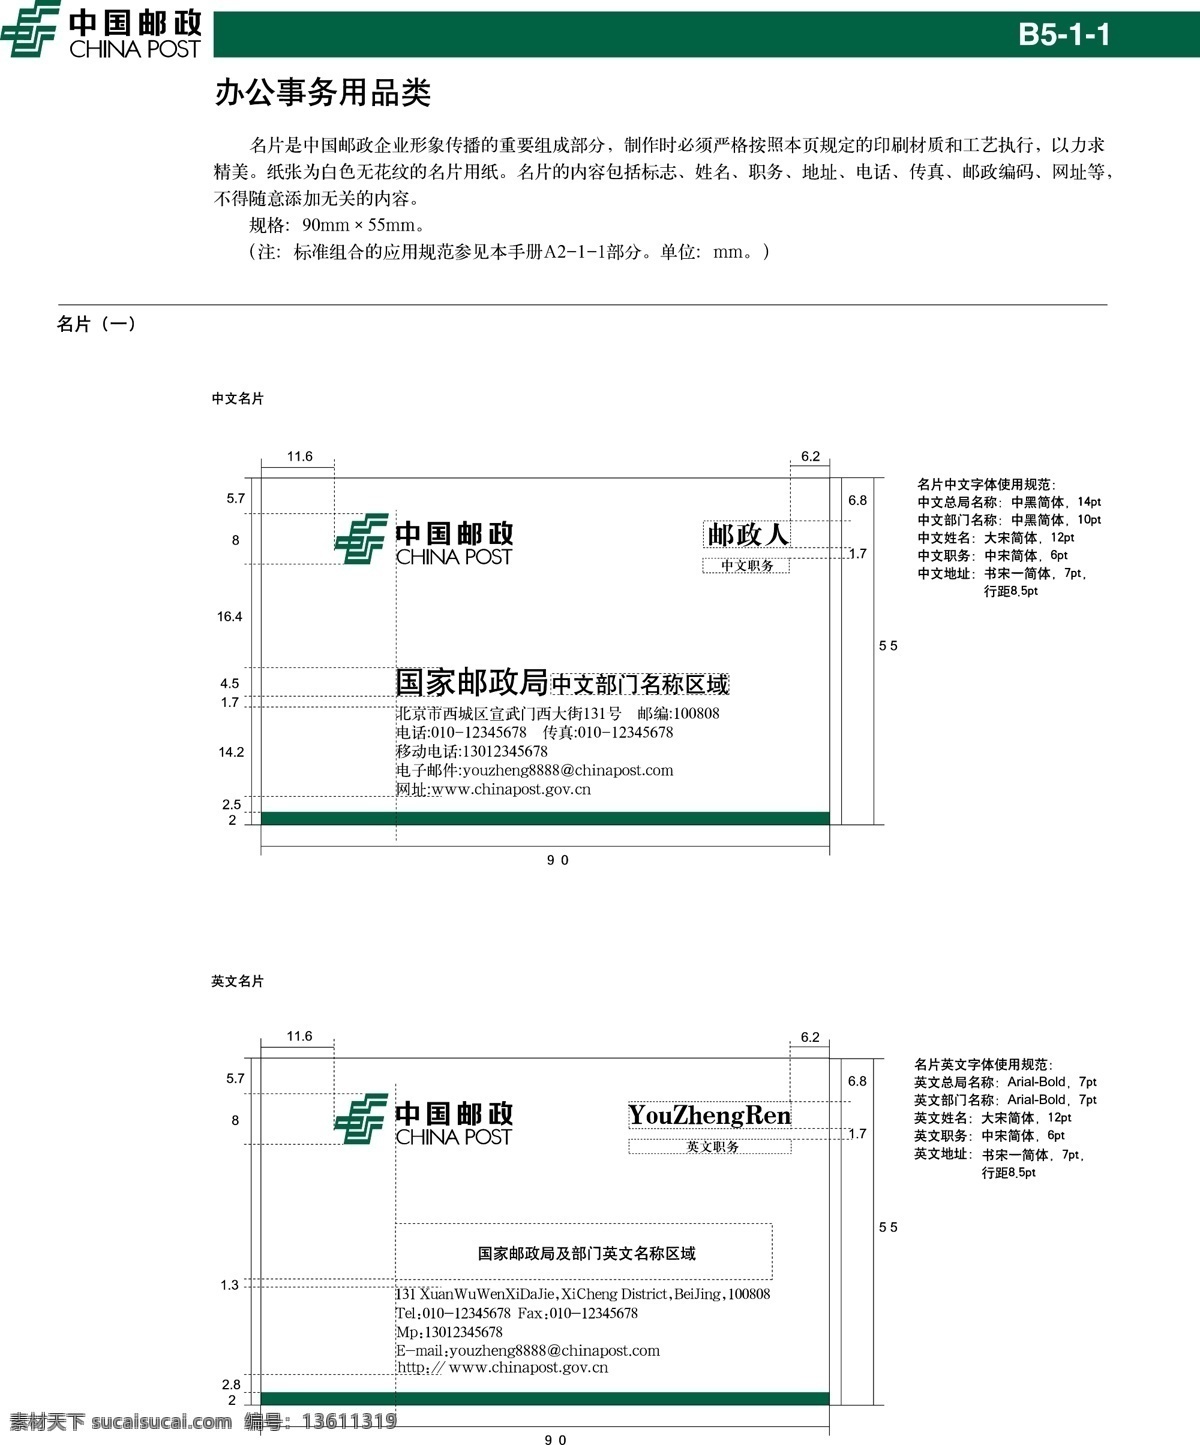 中国 邮政 名片 vi设计 模板 设计稿 素材元素 源文件 中国邮政 办公事务 用品类 矢量图